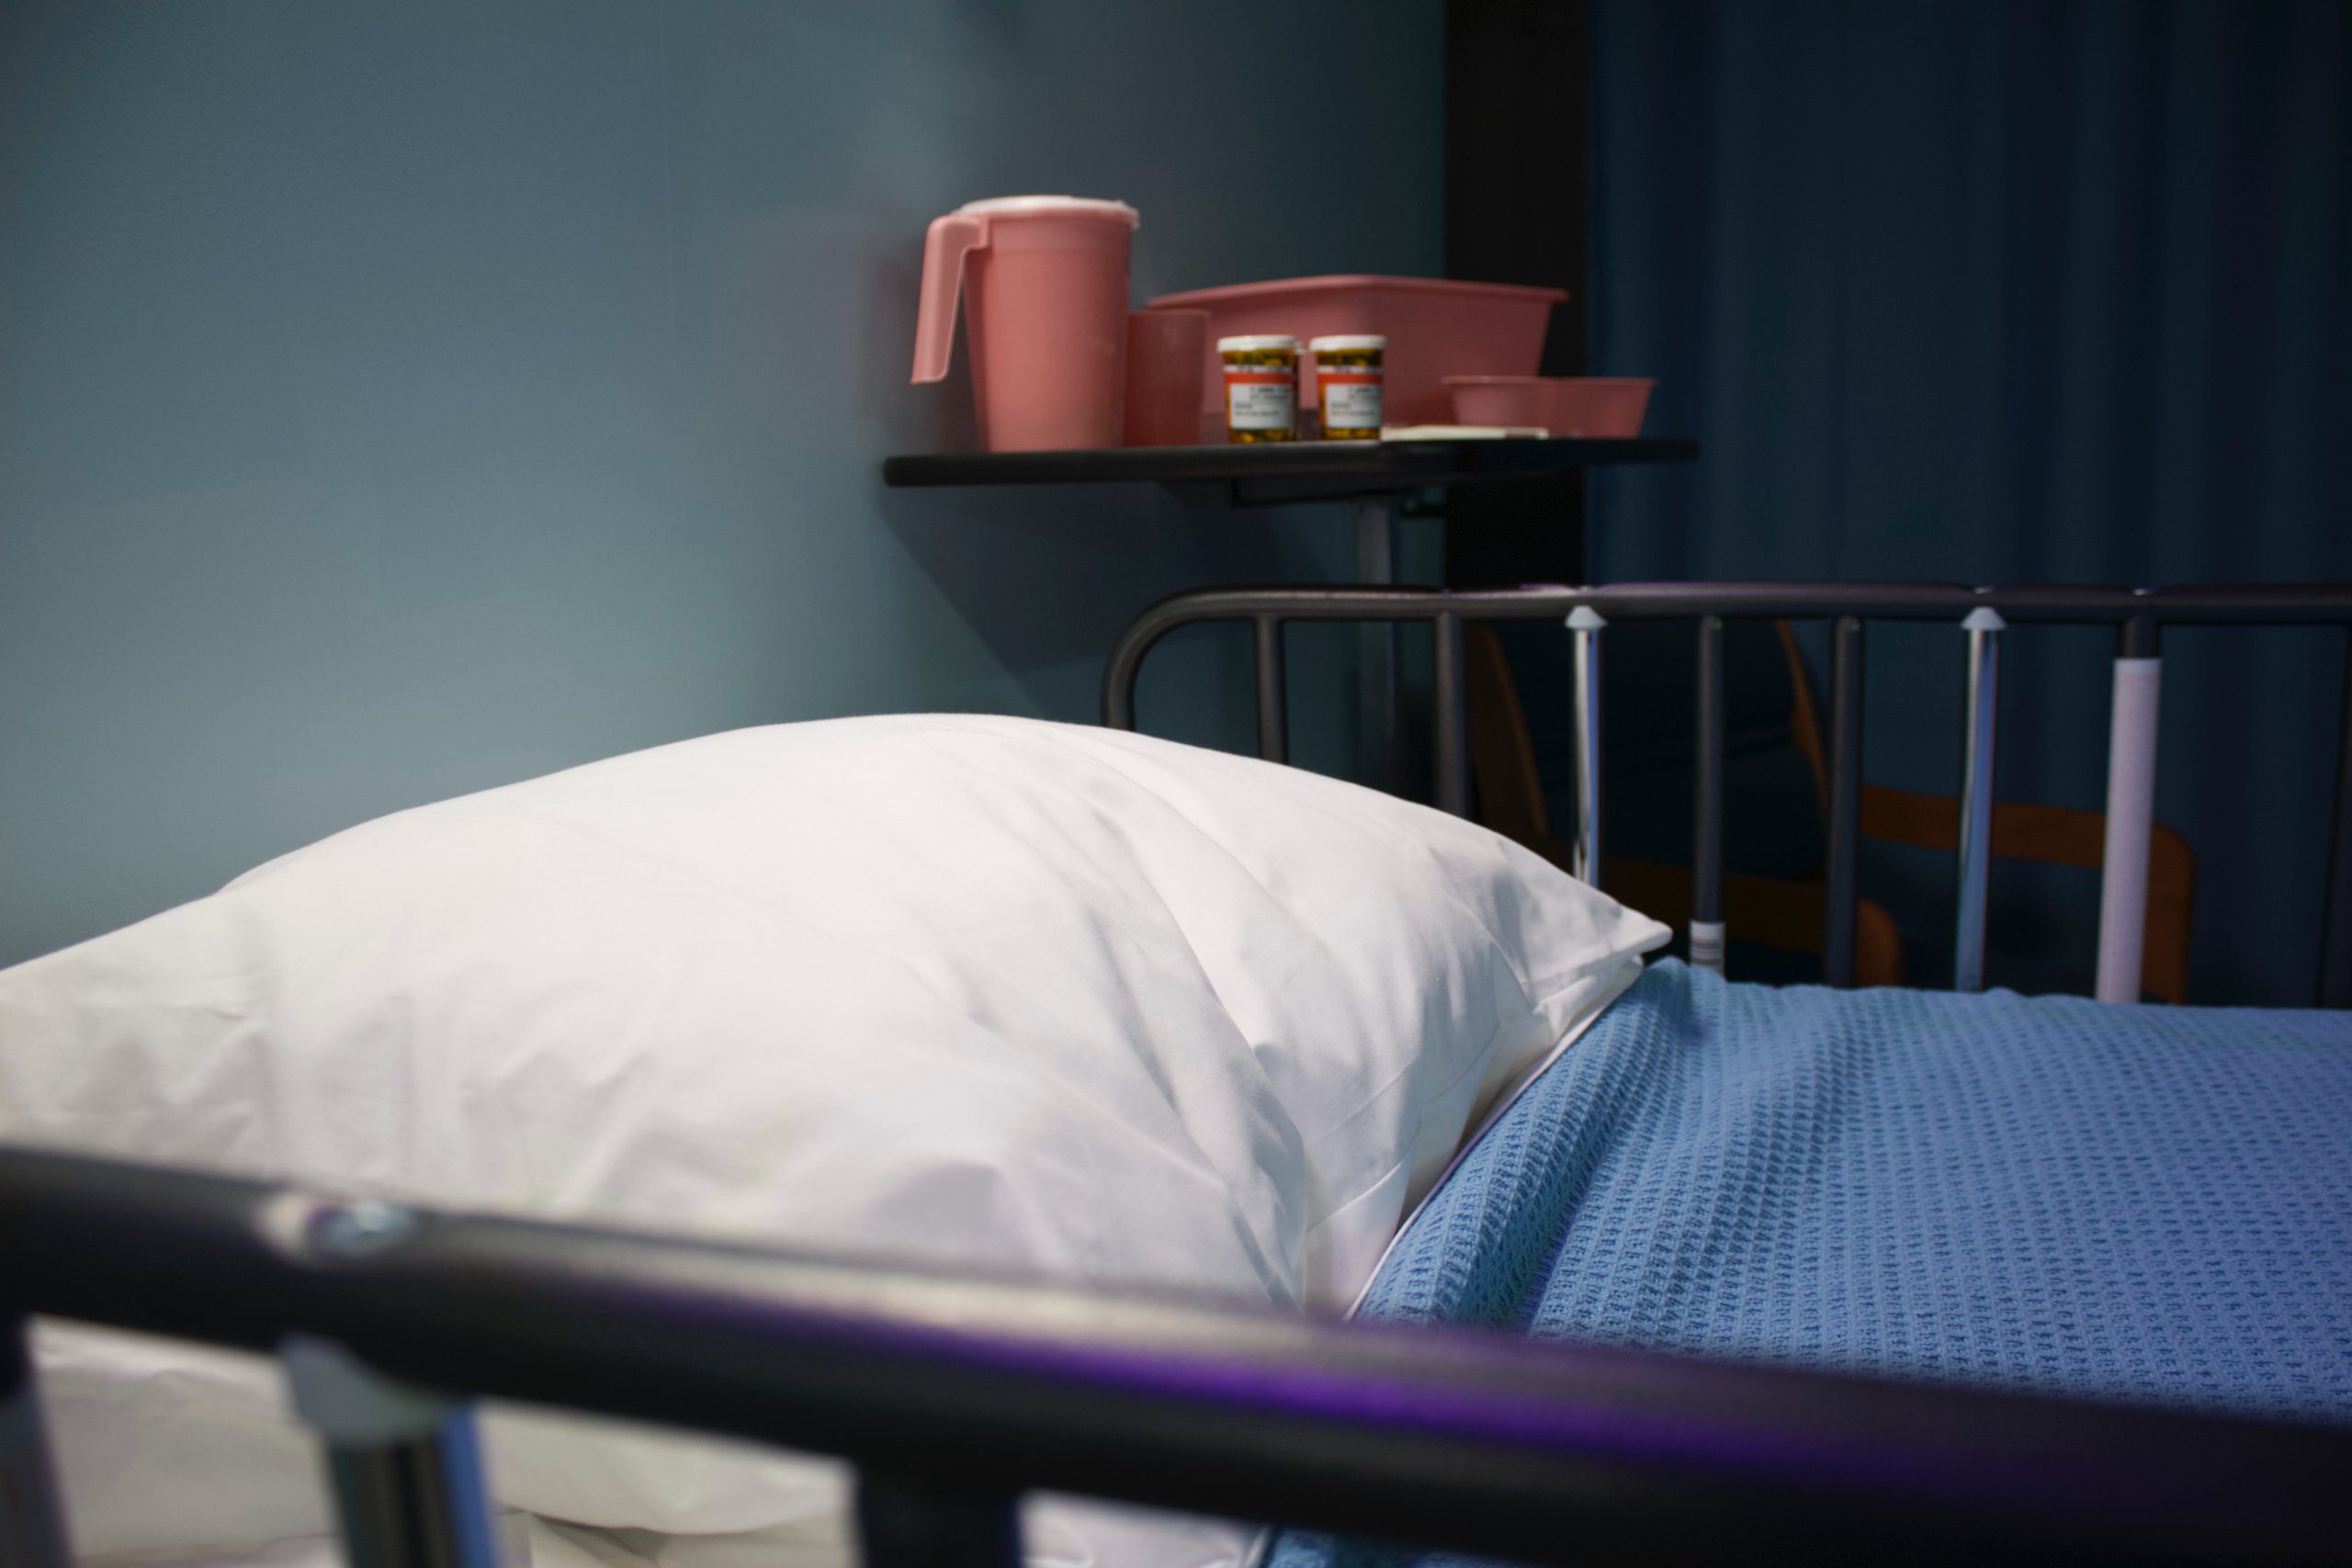 Sfatare il mito del “lesbian death bed”